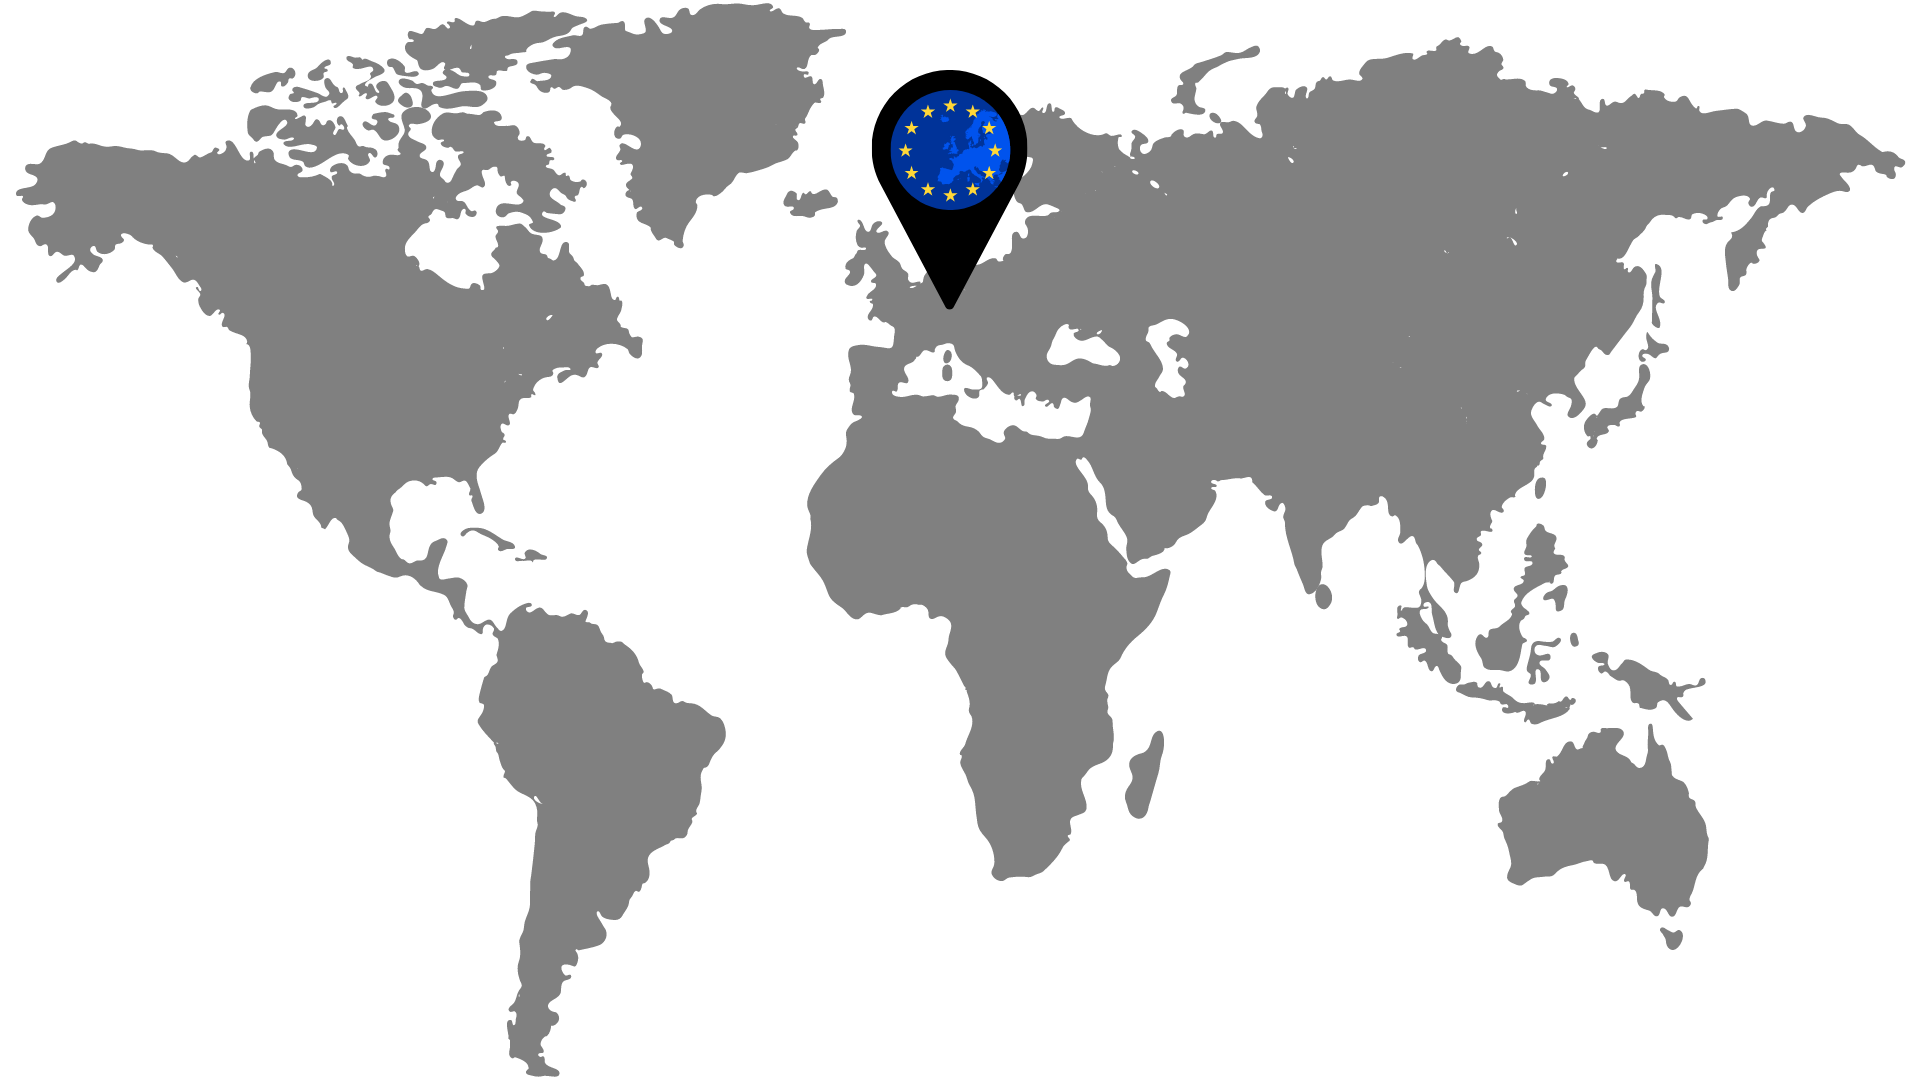 Weltkarte mit einem Marker über Europa, symbolisiert durch einen Pin mit dem Sternenkreis der Europäischen Union, der die Notwendigkeit einer EU-Adresse für ausländische Unternehmen darstellt.